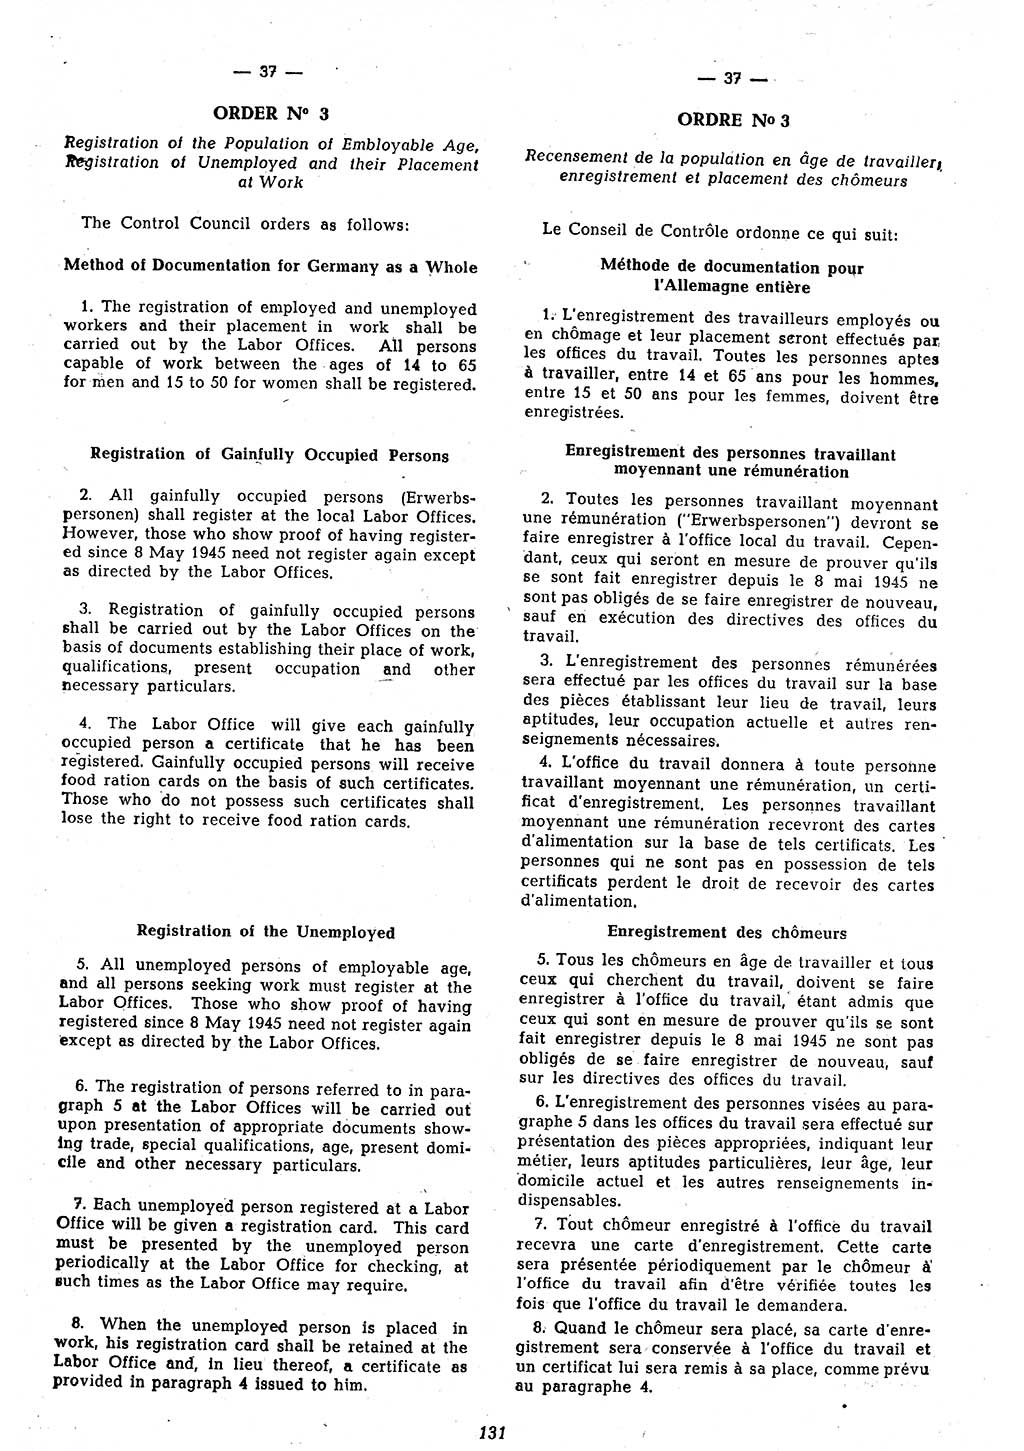 Amtsblatt des Kontrollrats (ABlKR) in Deutschland 1946, Seite 131/1 (ABlKR Dtl. 1946, S. 131/1)